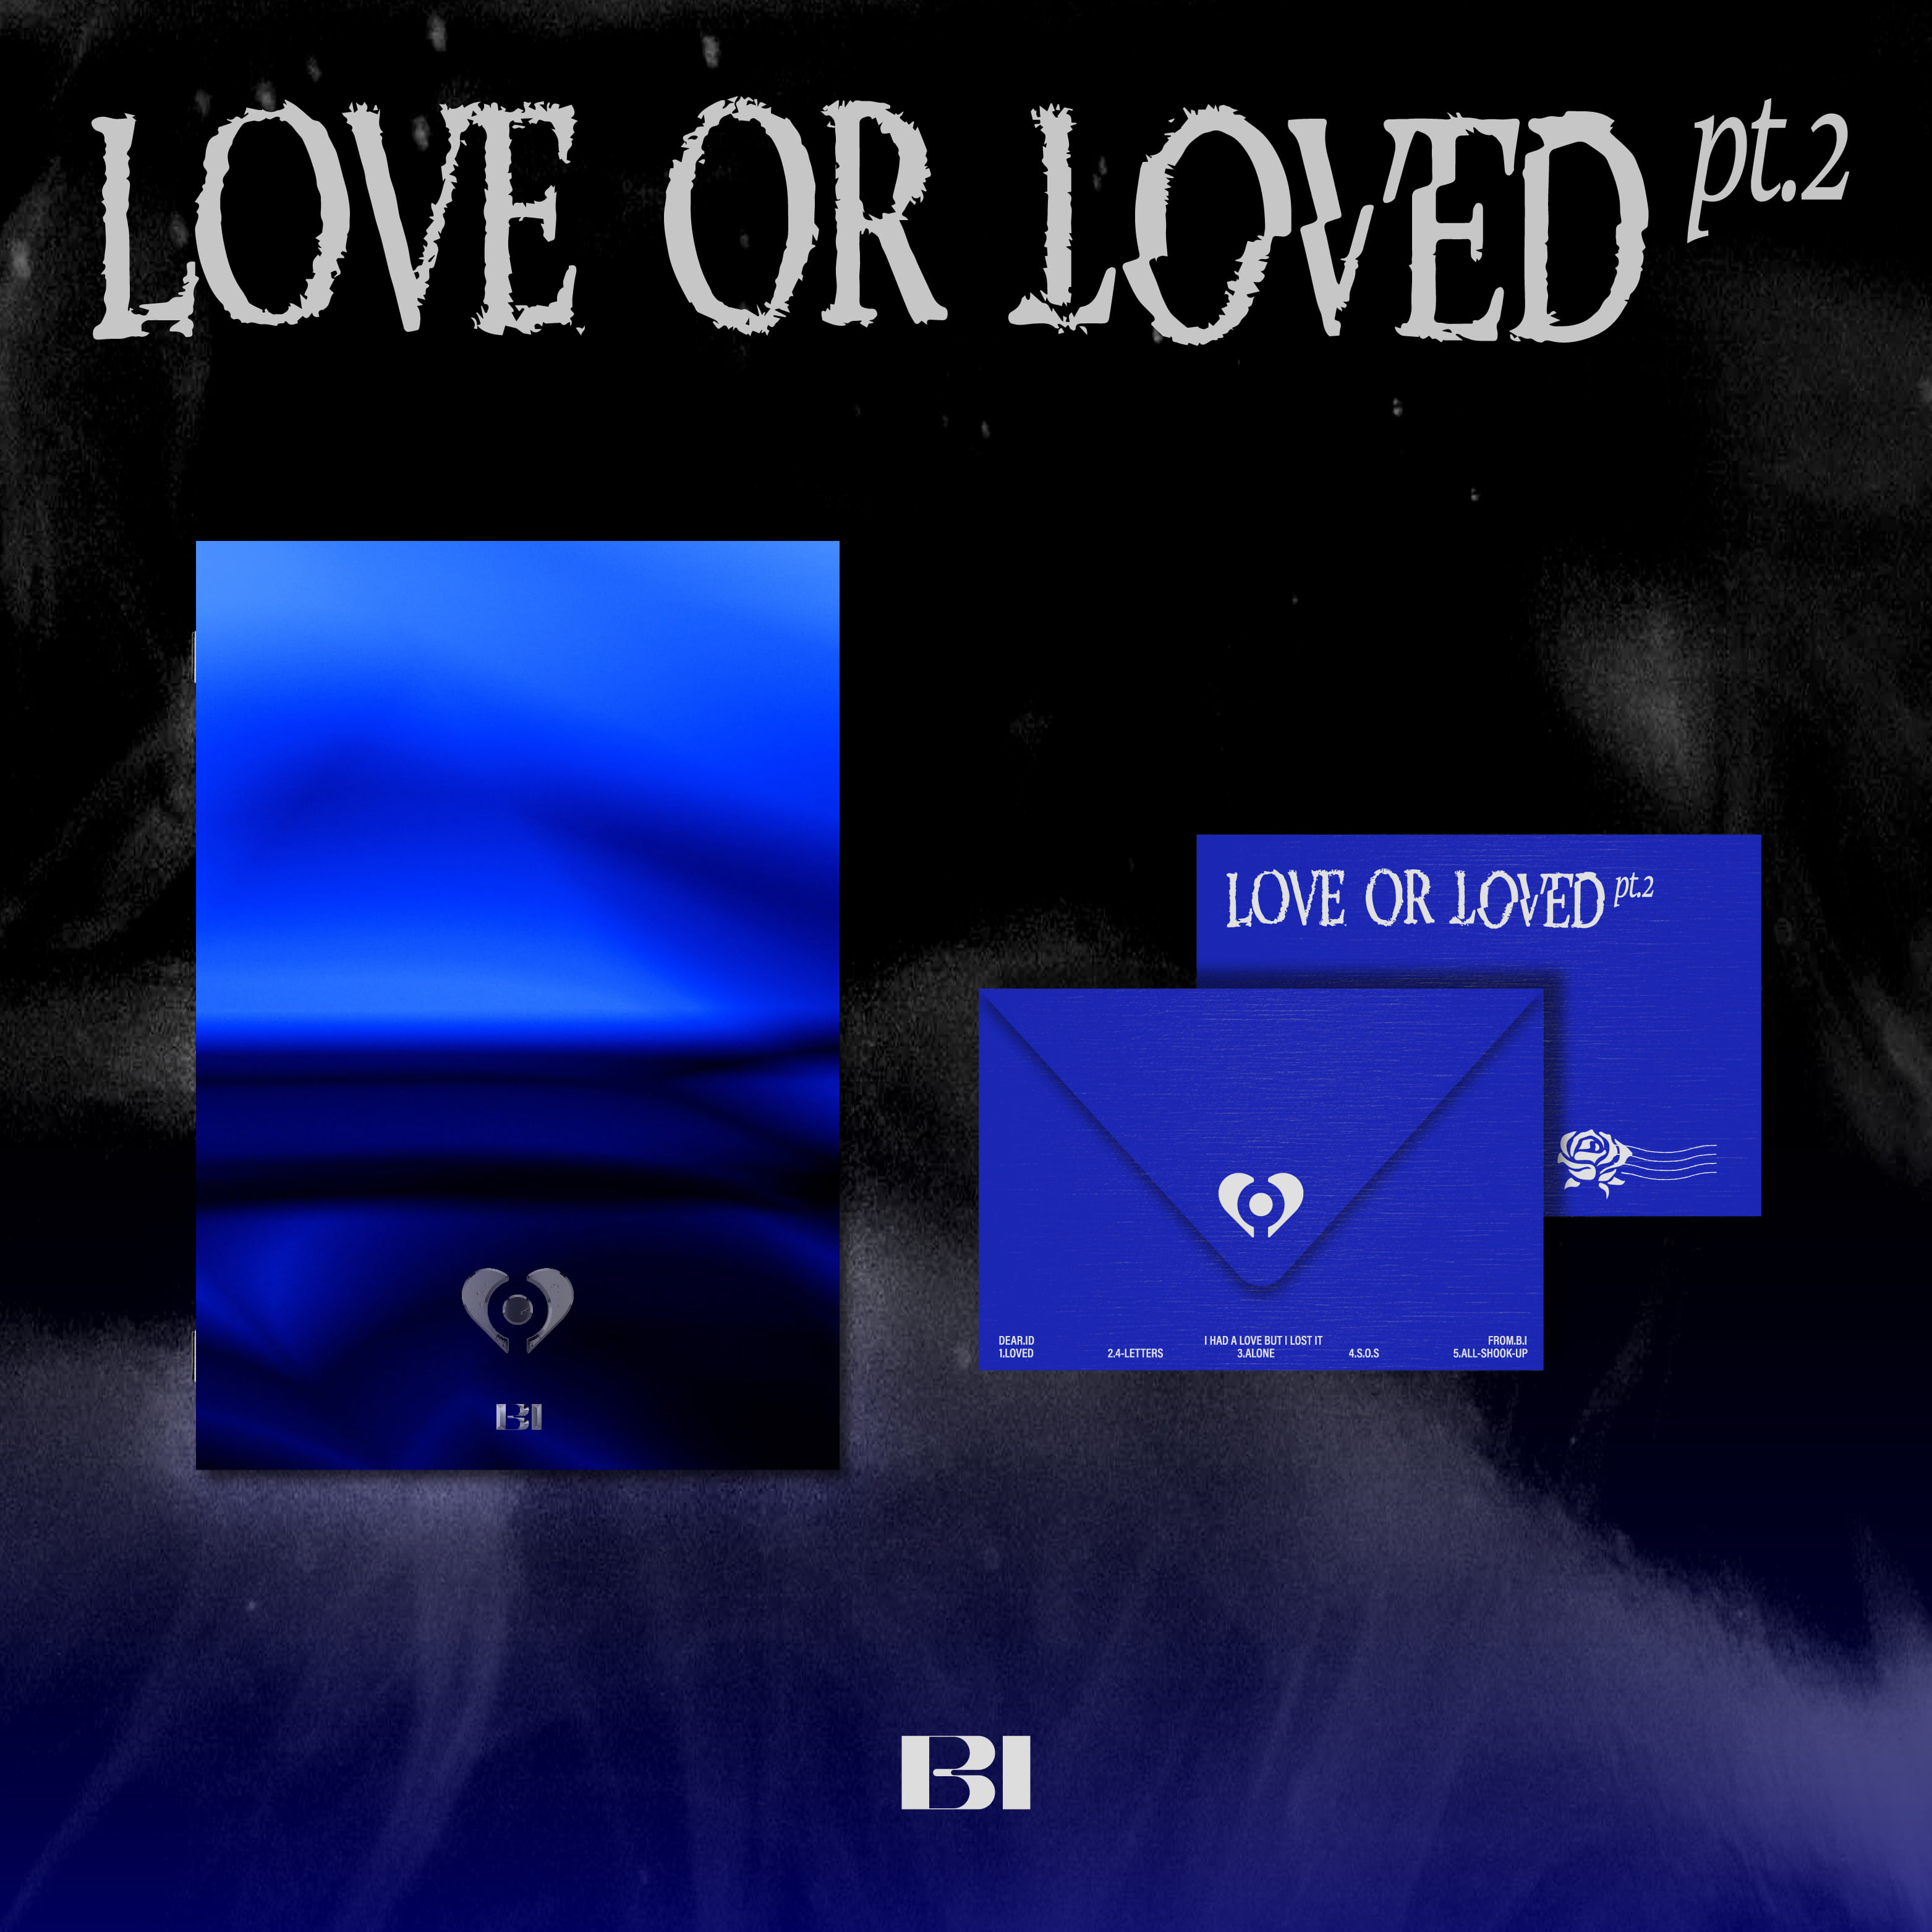 비아이 (B.I) - Love or Loved Part.2 (ASIA Letter Ver.)